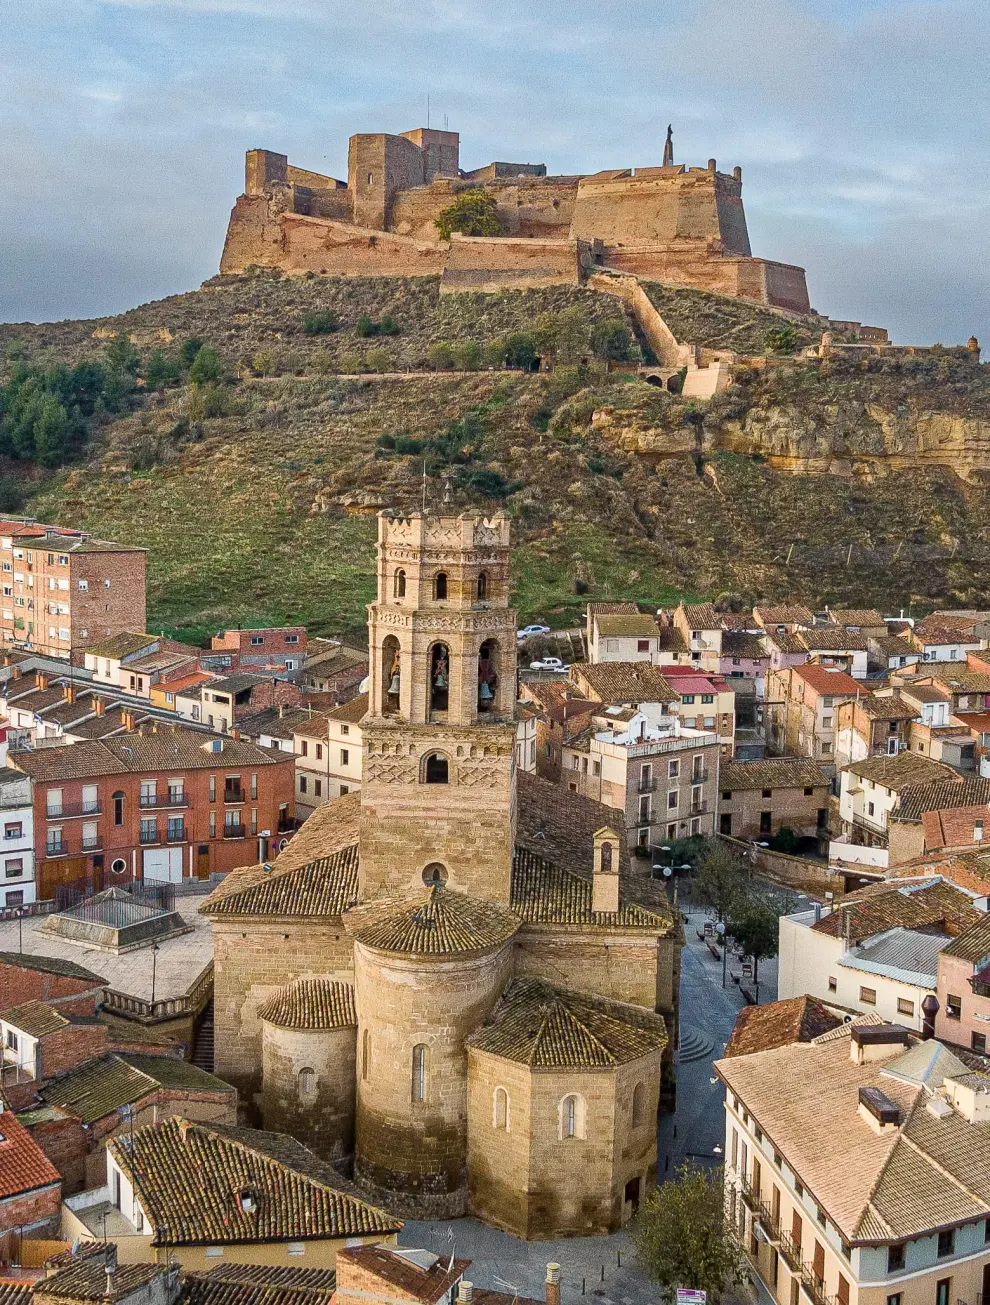 La concatedral de Santa María, de Monzón, con el castillo de la localidad al fondo.